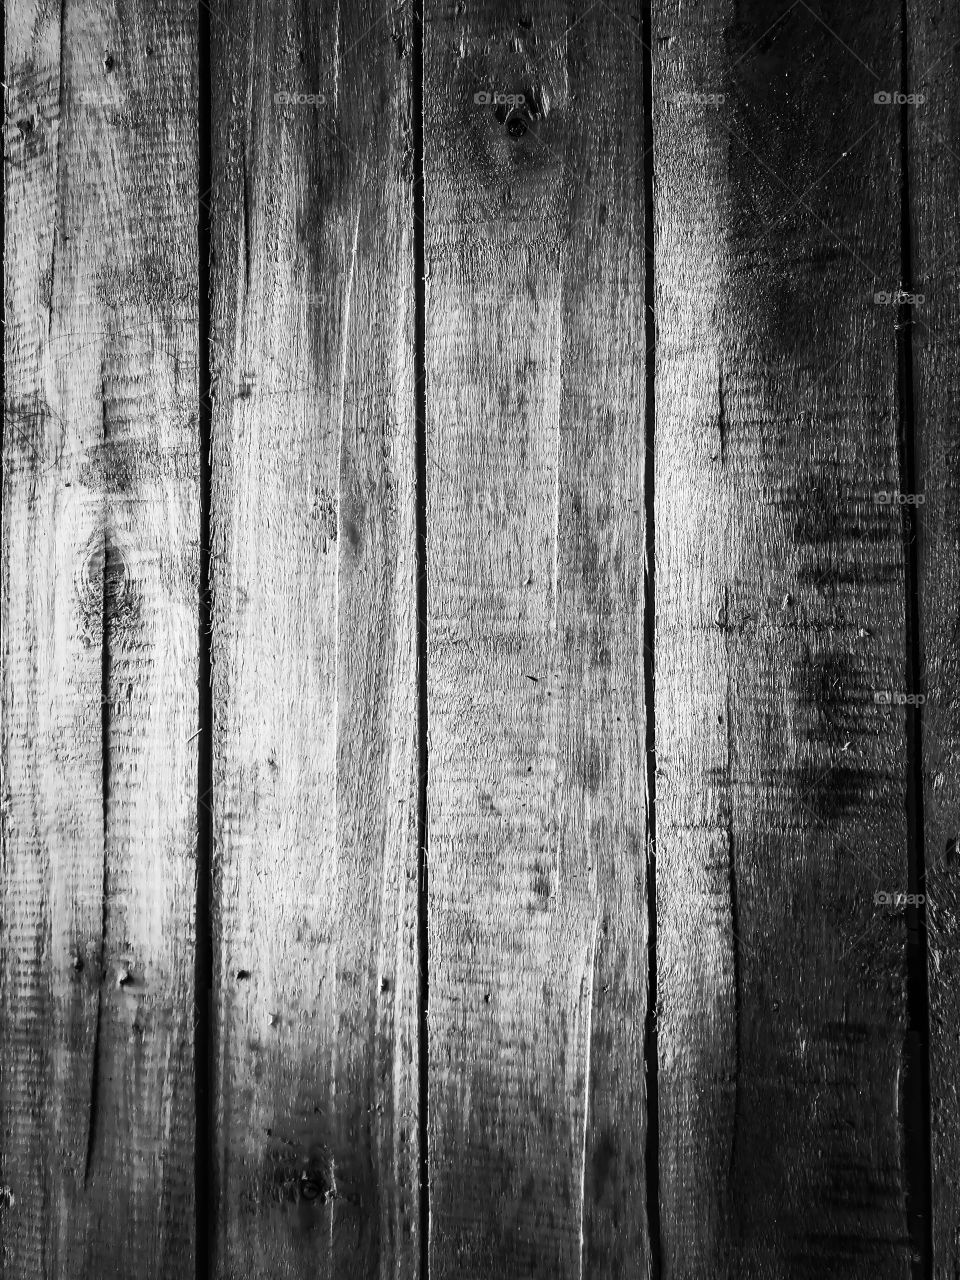 Dark wooden background, wooden background